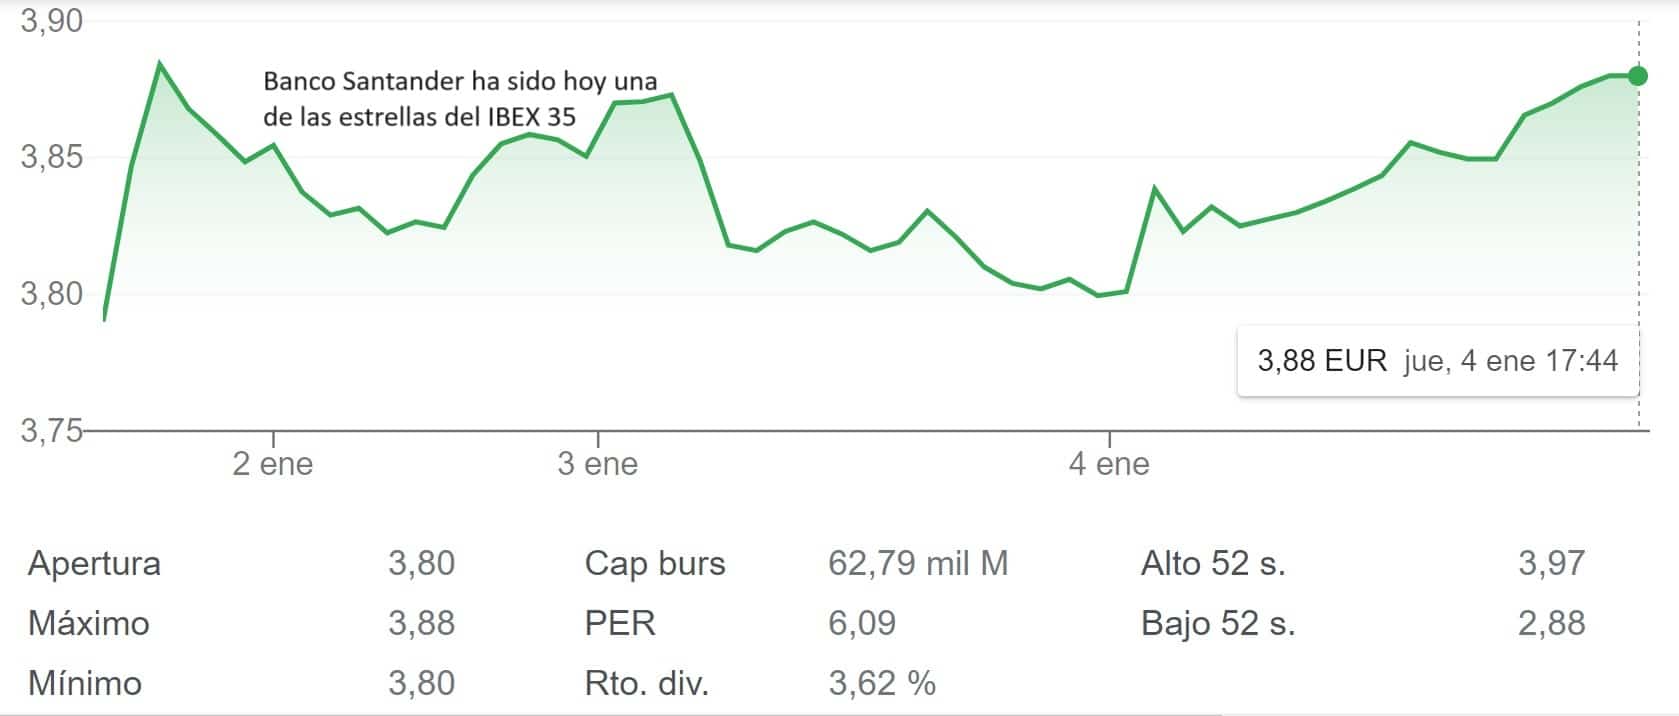 La banca toma las riendas del IBEX 35 con Santander por encima del 2%